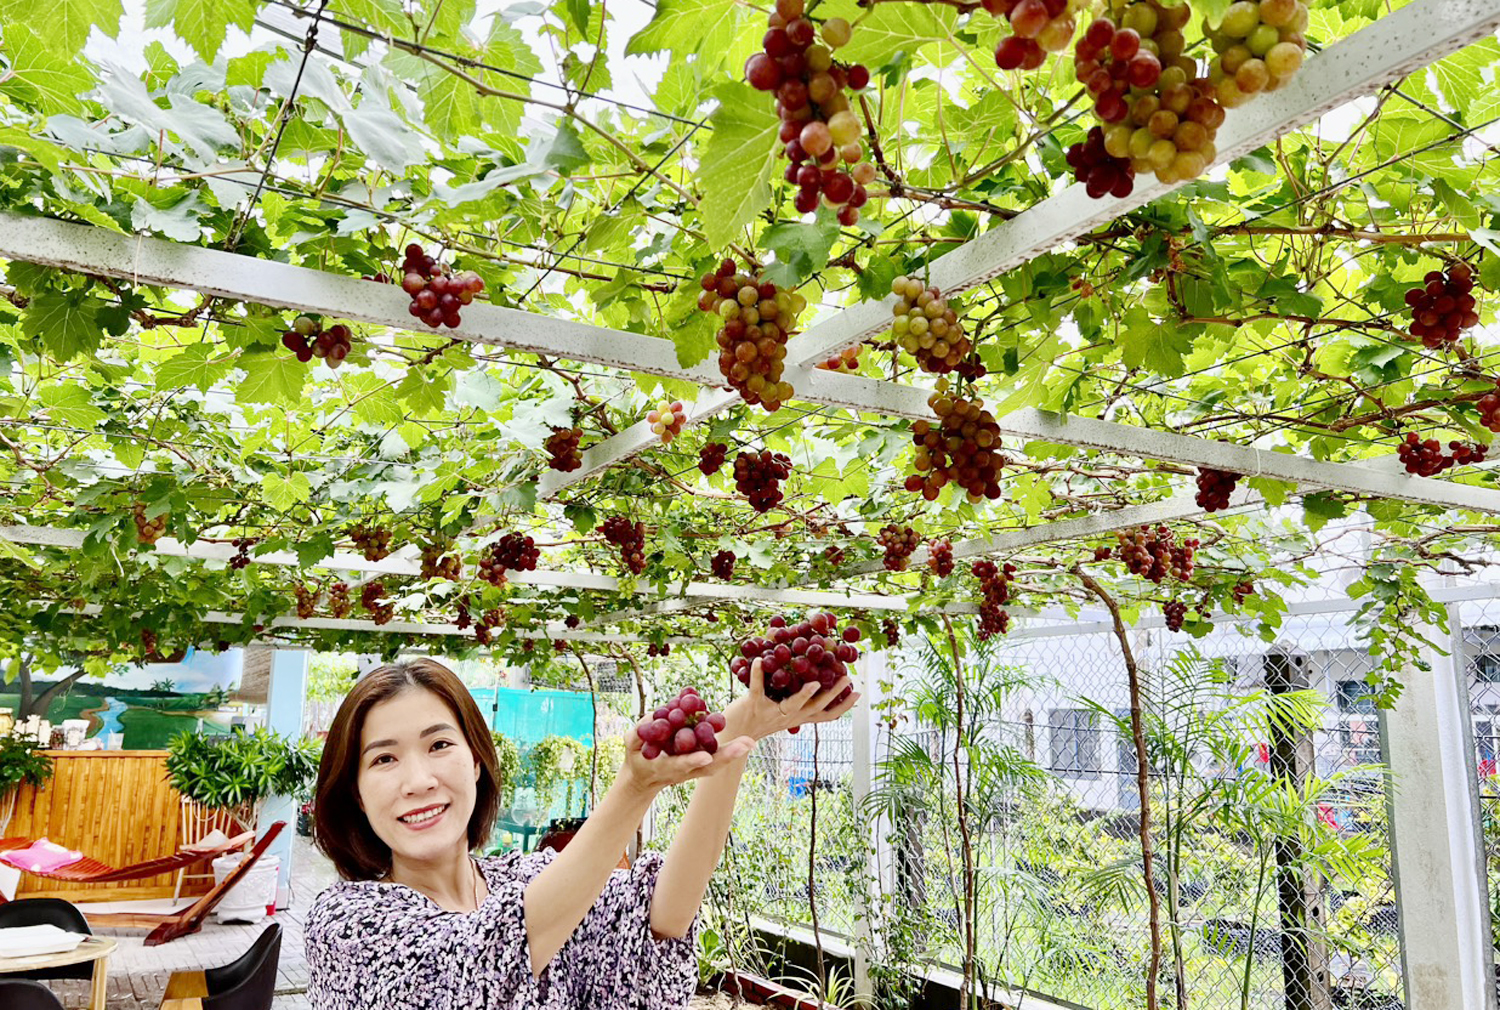 Nho Ninh Thuận chín đỏ rực trong khu vườn “gieo rắc đam mê” ở Sóc Trăng - 2